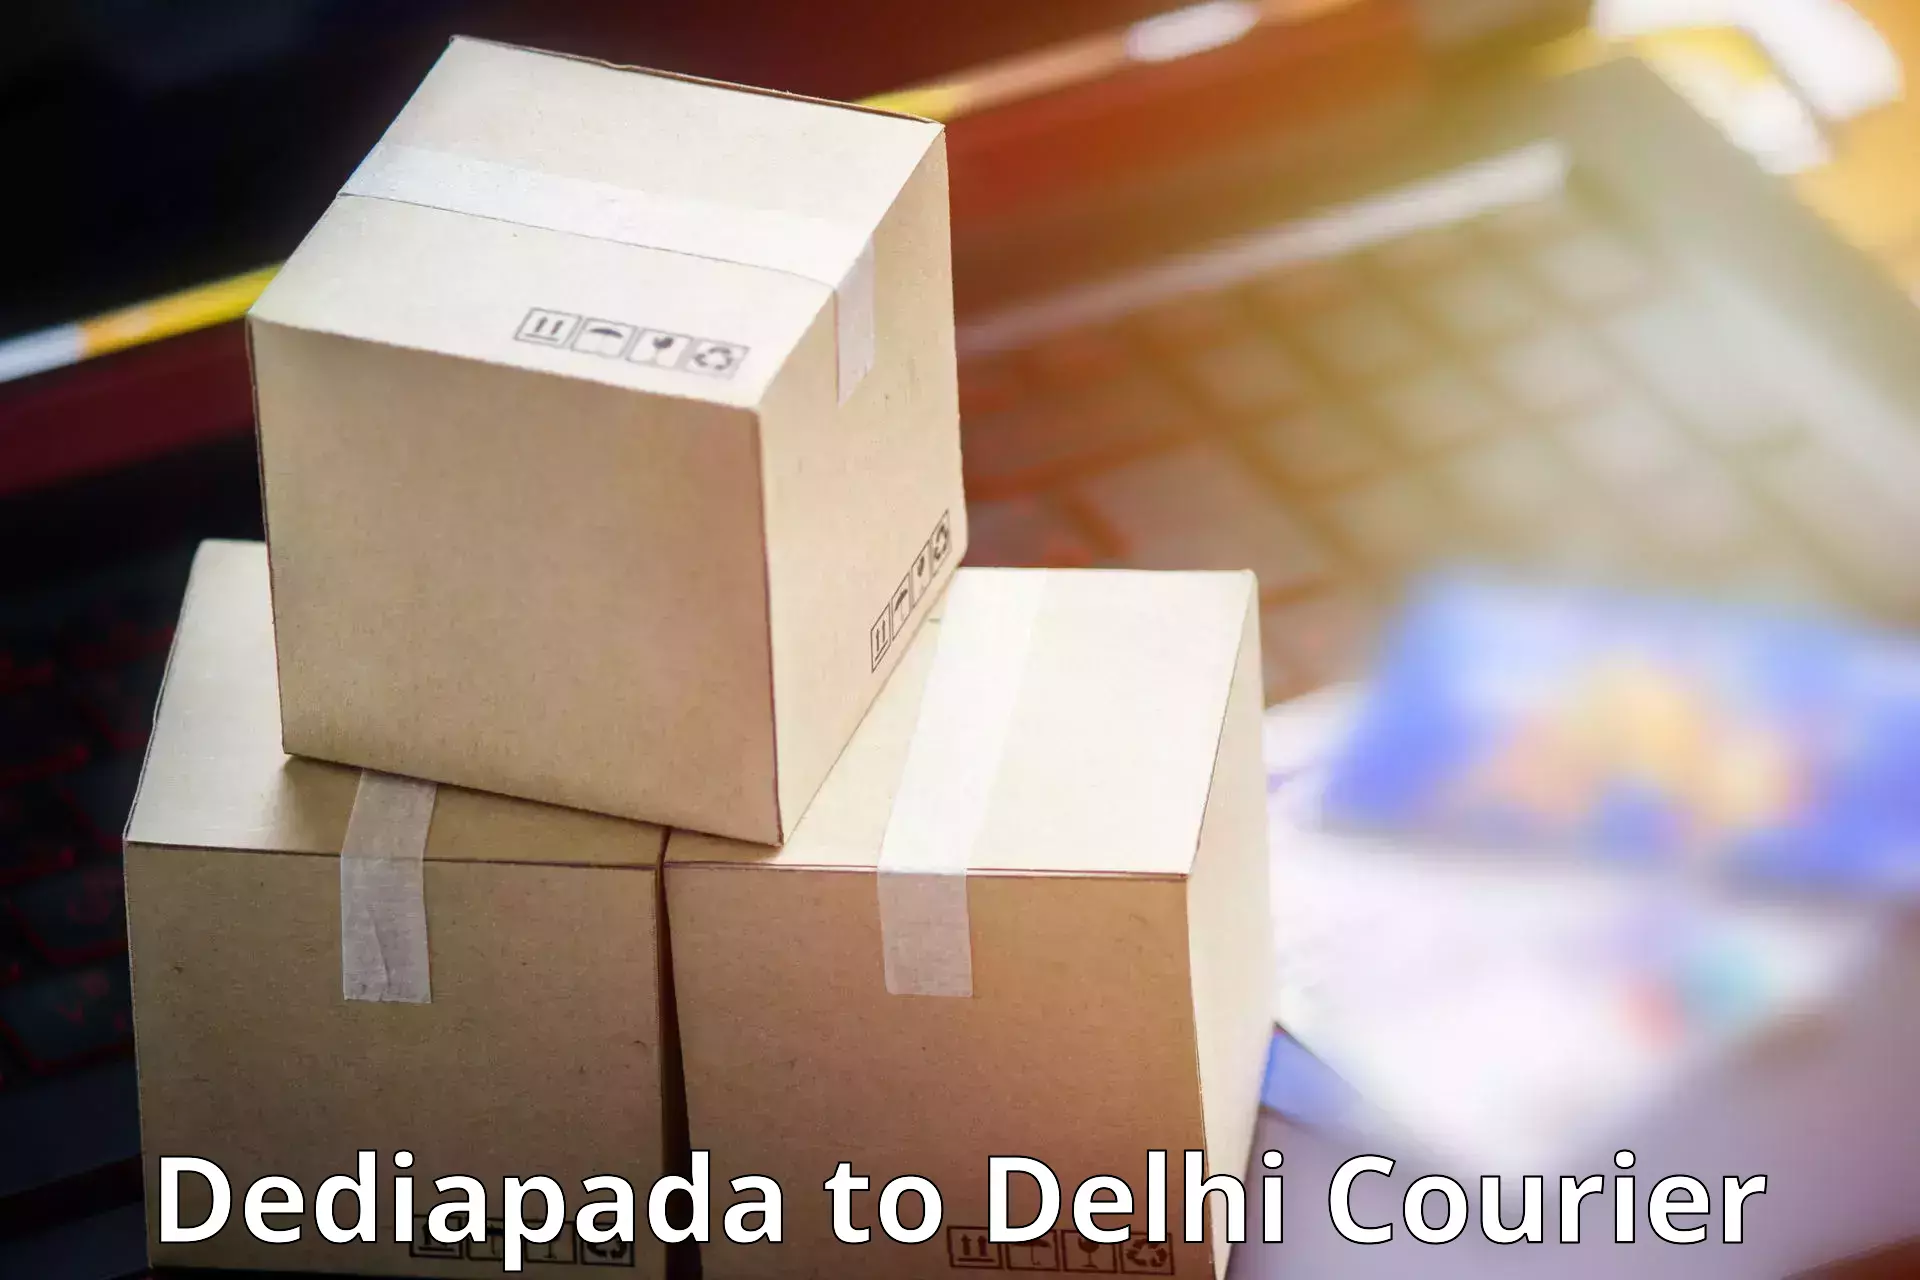 Reliable courier service in Dediapada to Jamia Millia Islamia New Delhi